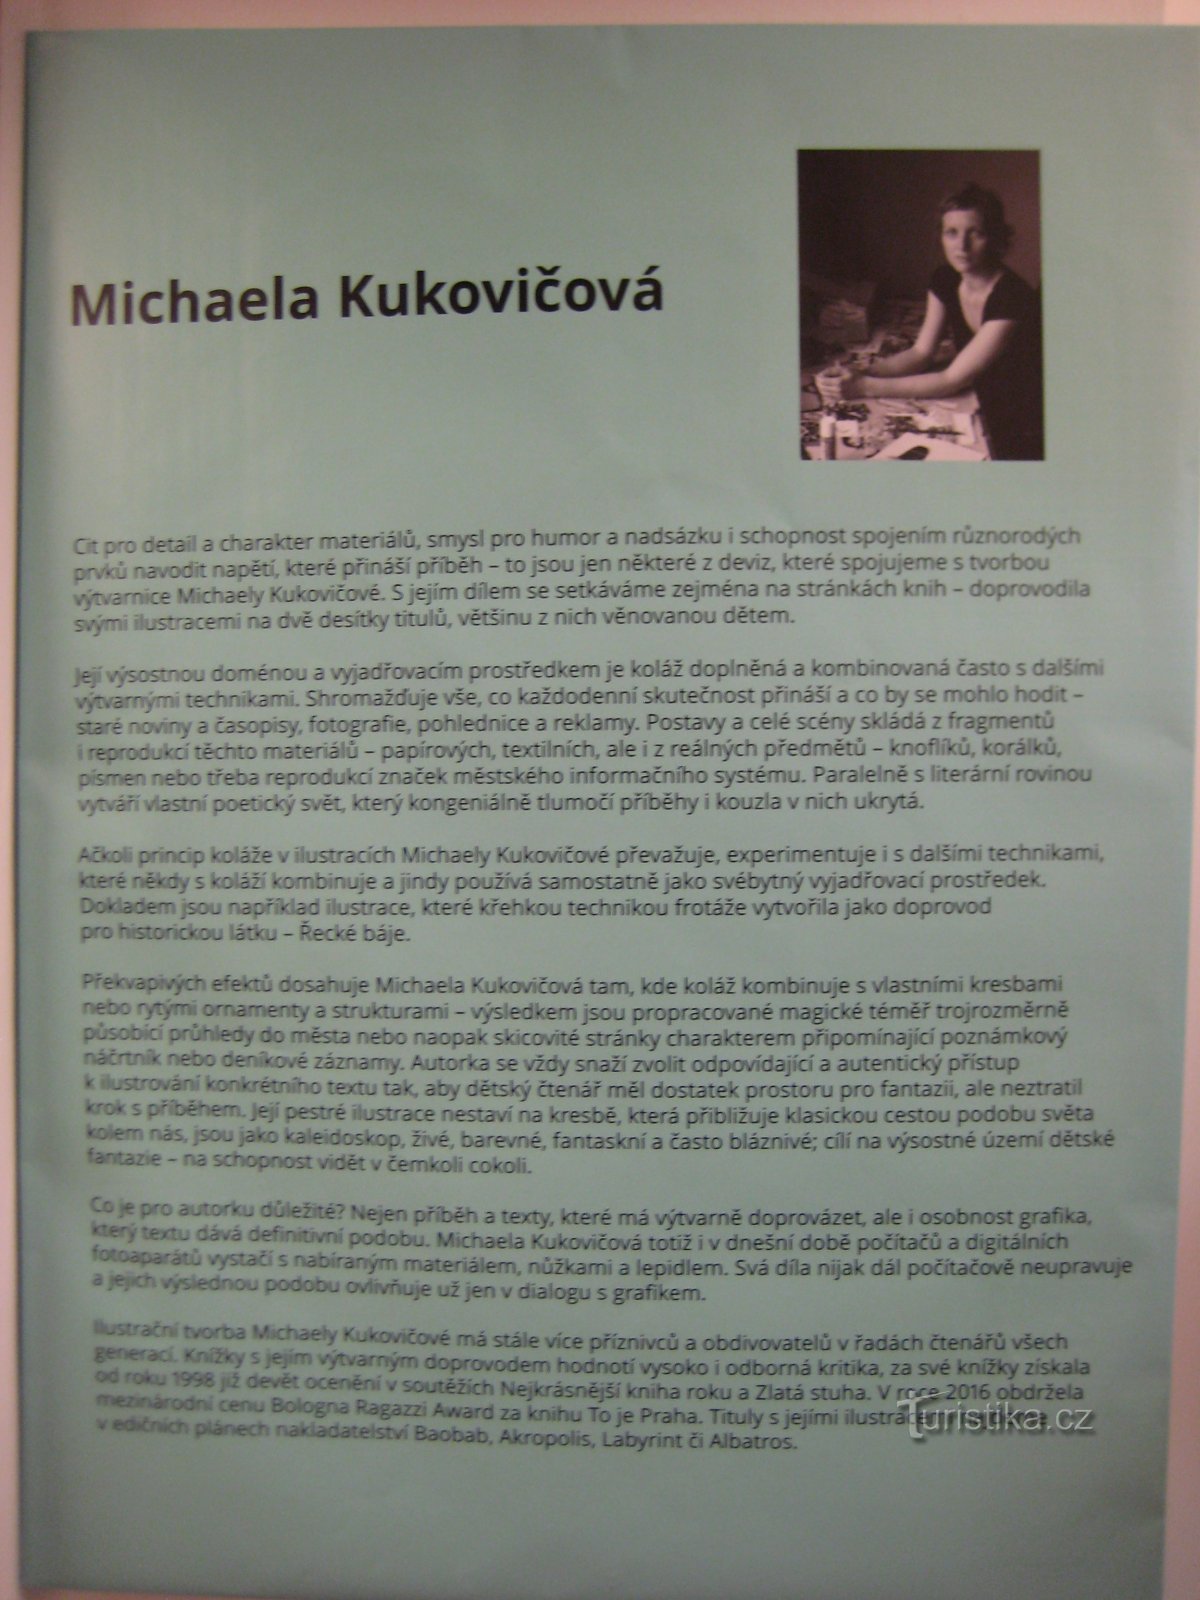 Kiállítás Michaela Kukovičová - Bubluch, Duchnous és mások - Könyök